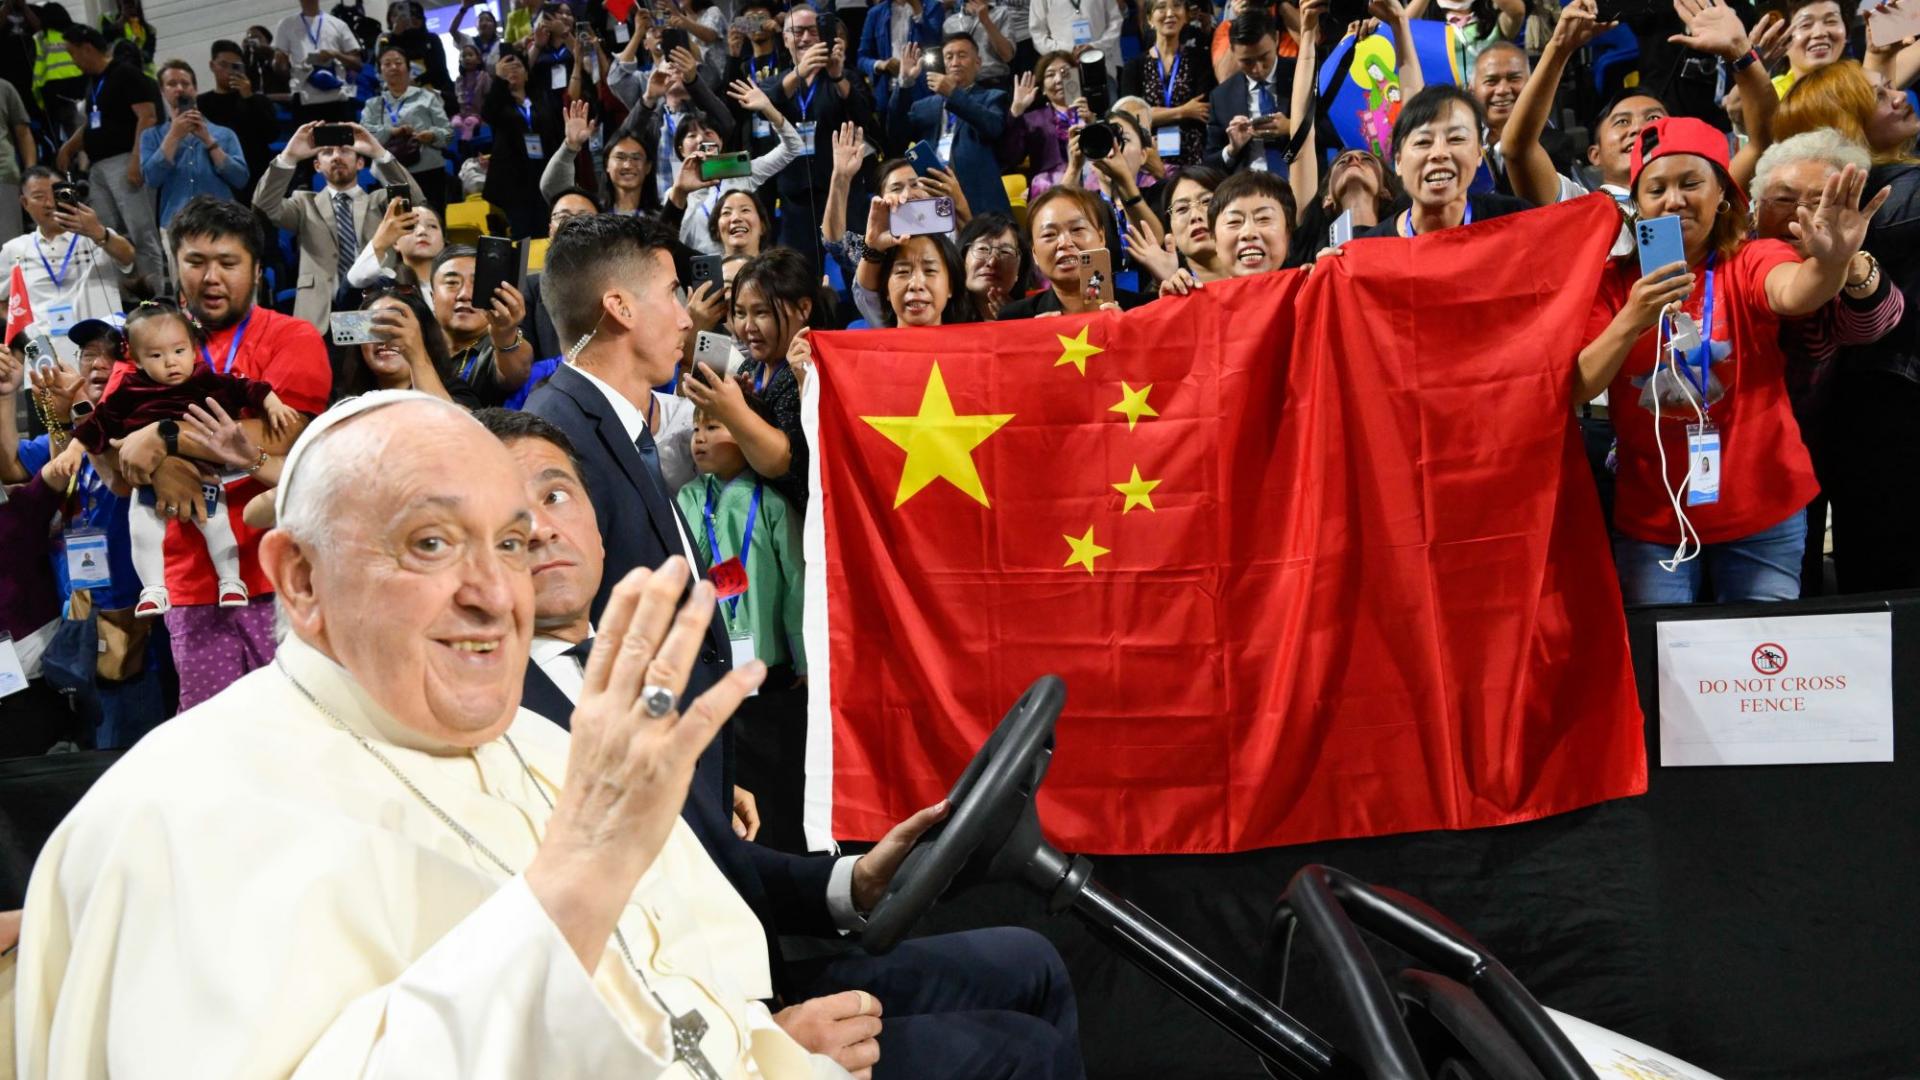 Papst Franziskus wird bei seinem Besuch in der Mongolei von Pilgern mit einer China-Flagge begrüßt